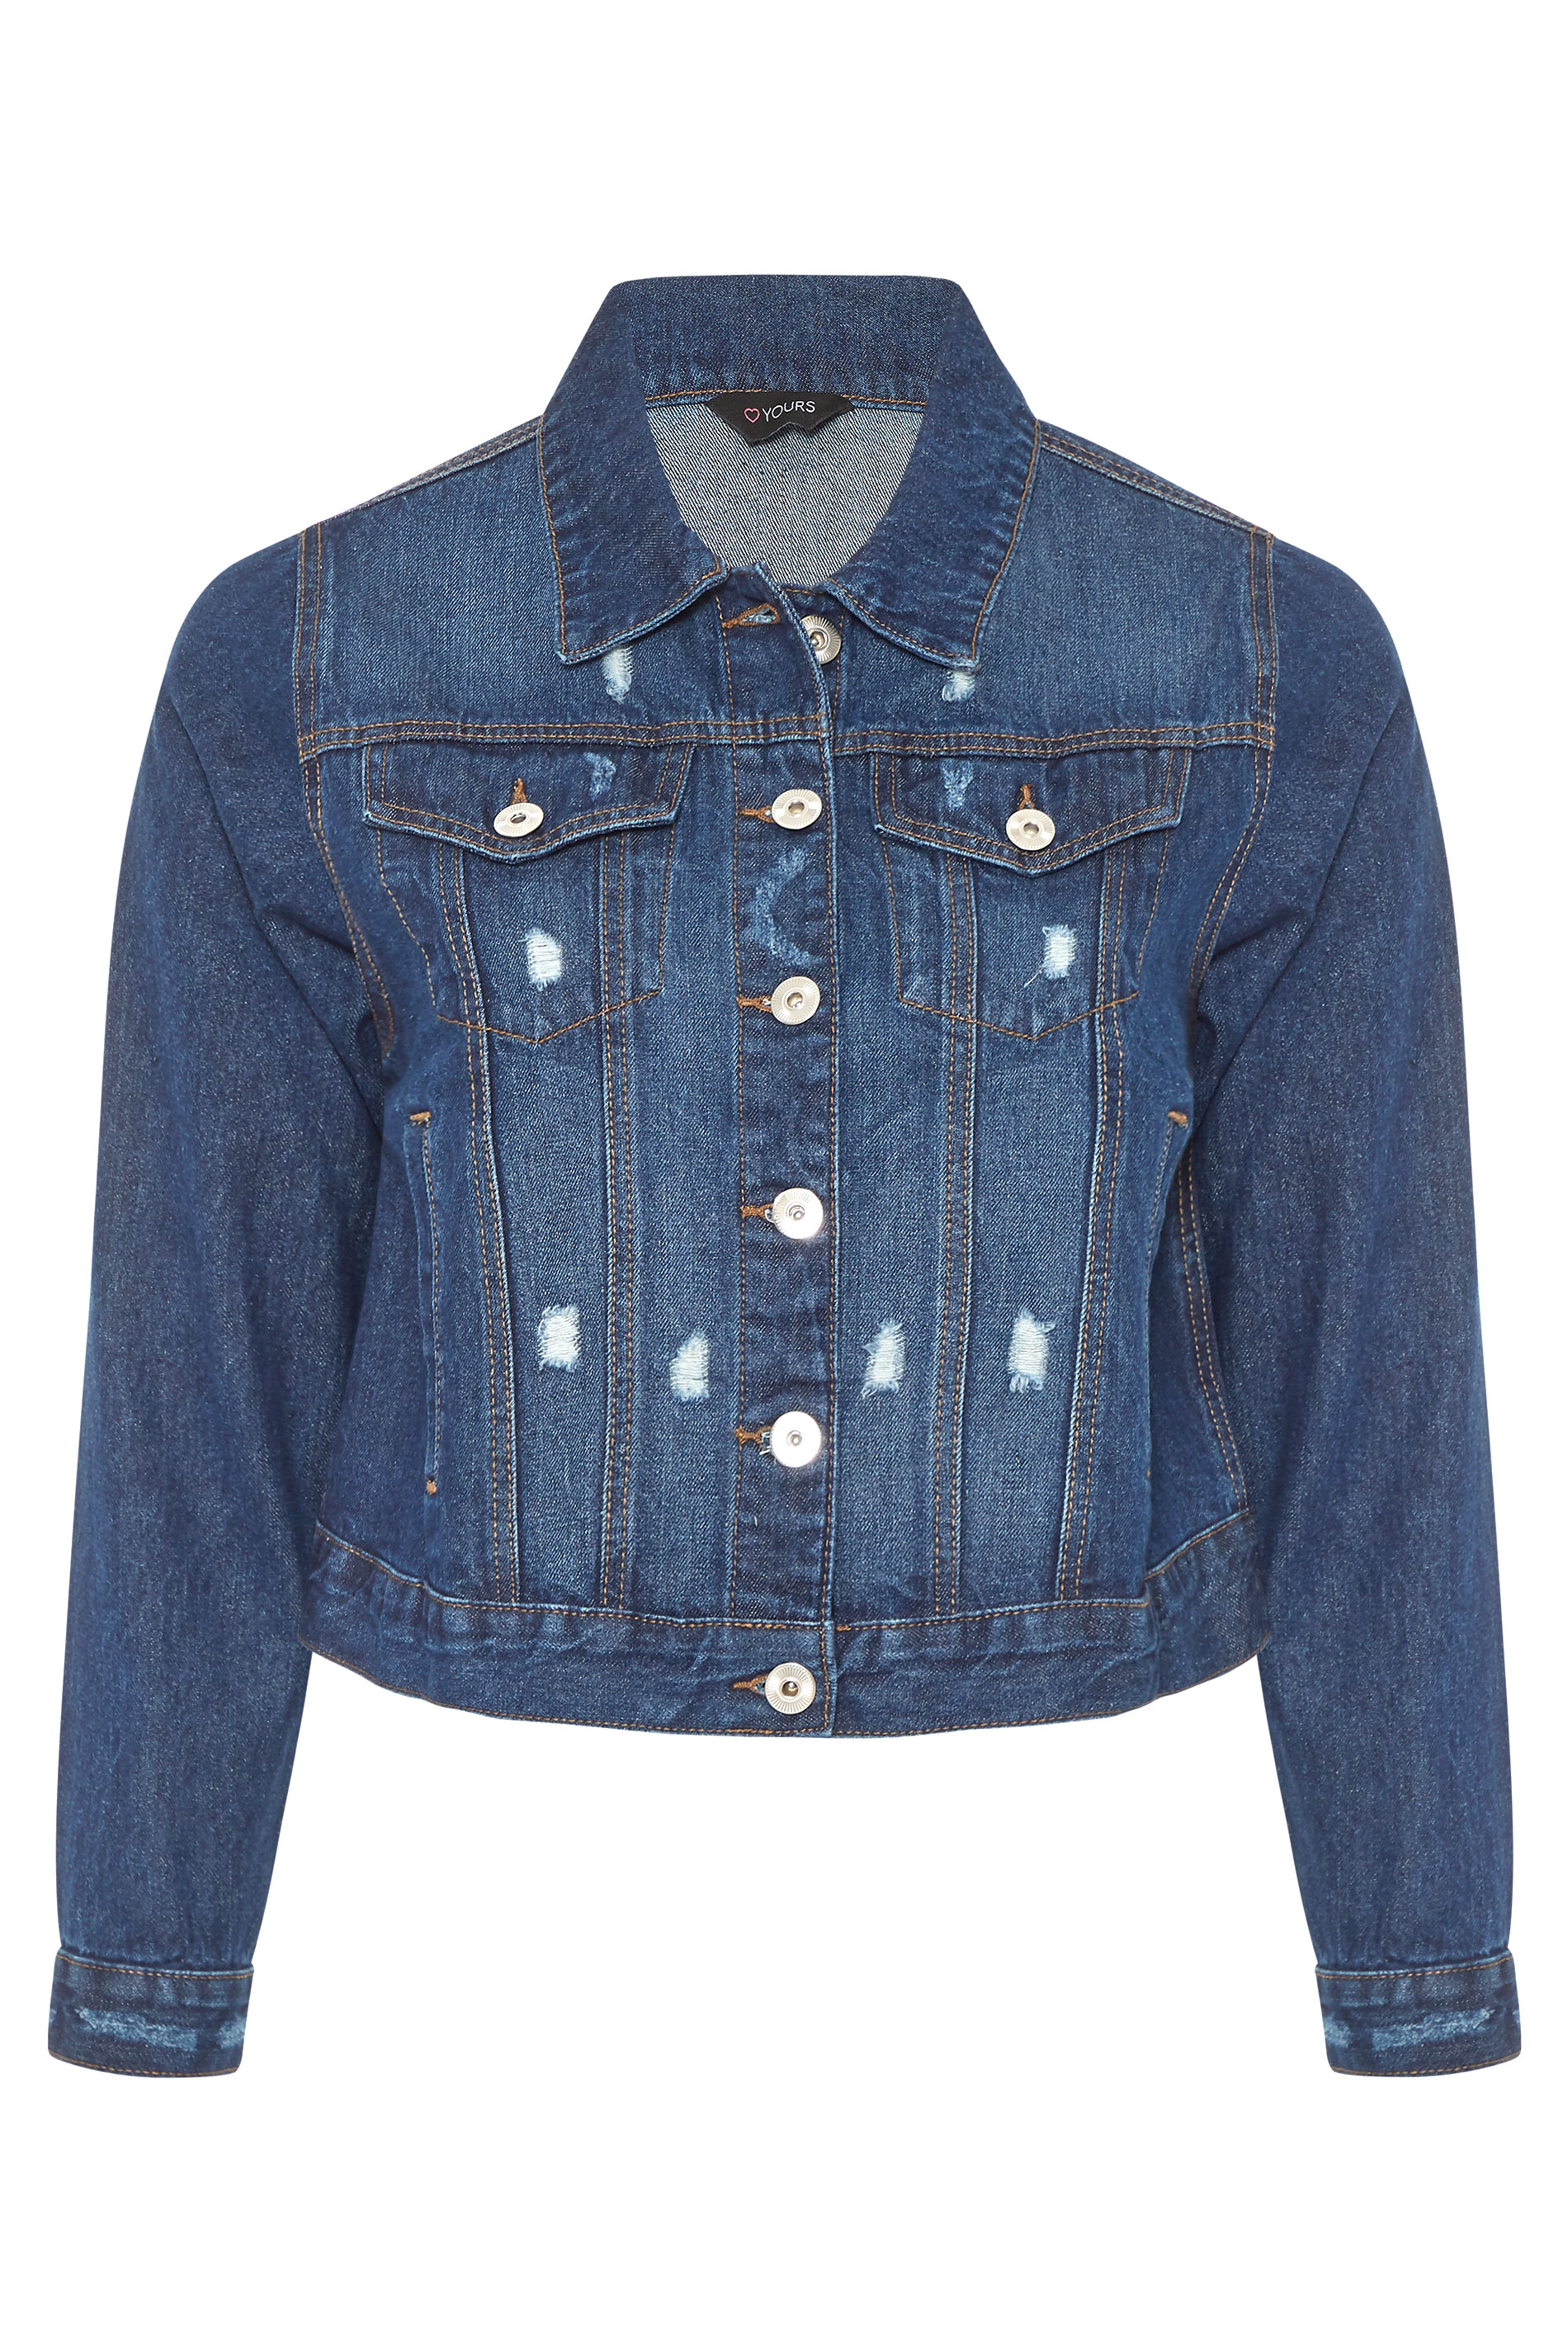 Groen Afsnijden Kameraad Indigo Blue Distressed Denim Jacket | Yours Clothing